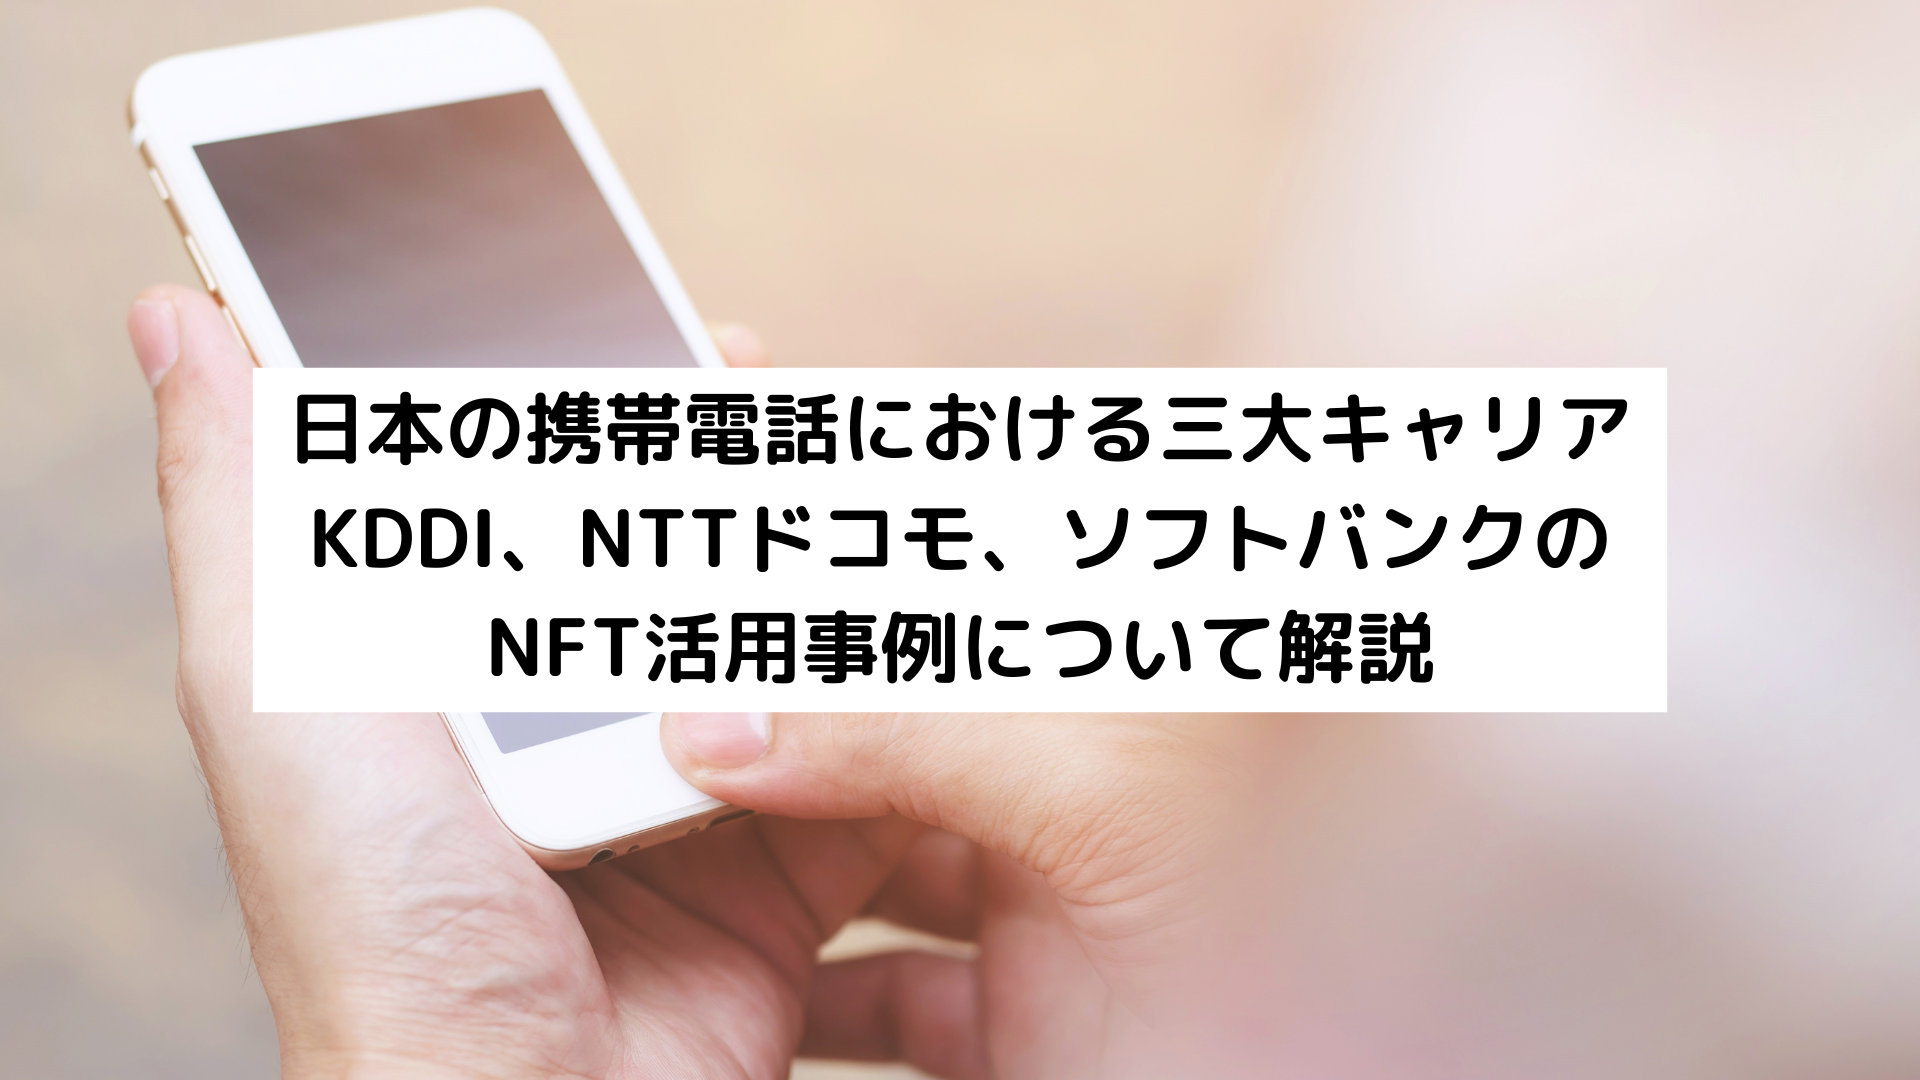 日本の携帯電話における三大キャリア KDDI、NTTドコモ、ソフトバンクの